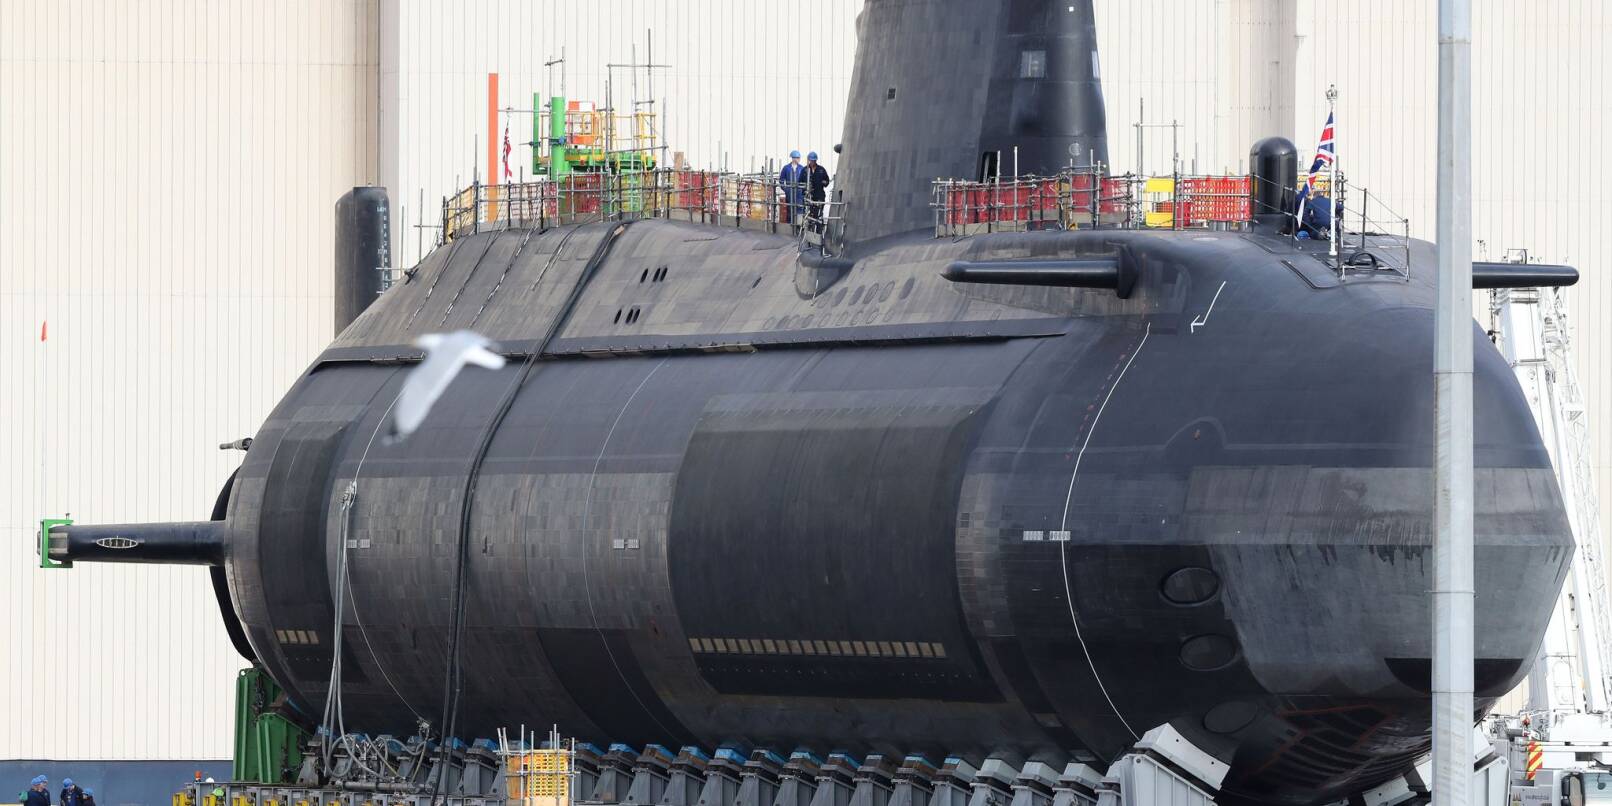 Ein britisches Atom-U-Boot der Astute-Klasse, hier die «HMS Audacious», auf einem Archivbild aus dem Jahr 2017.